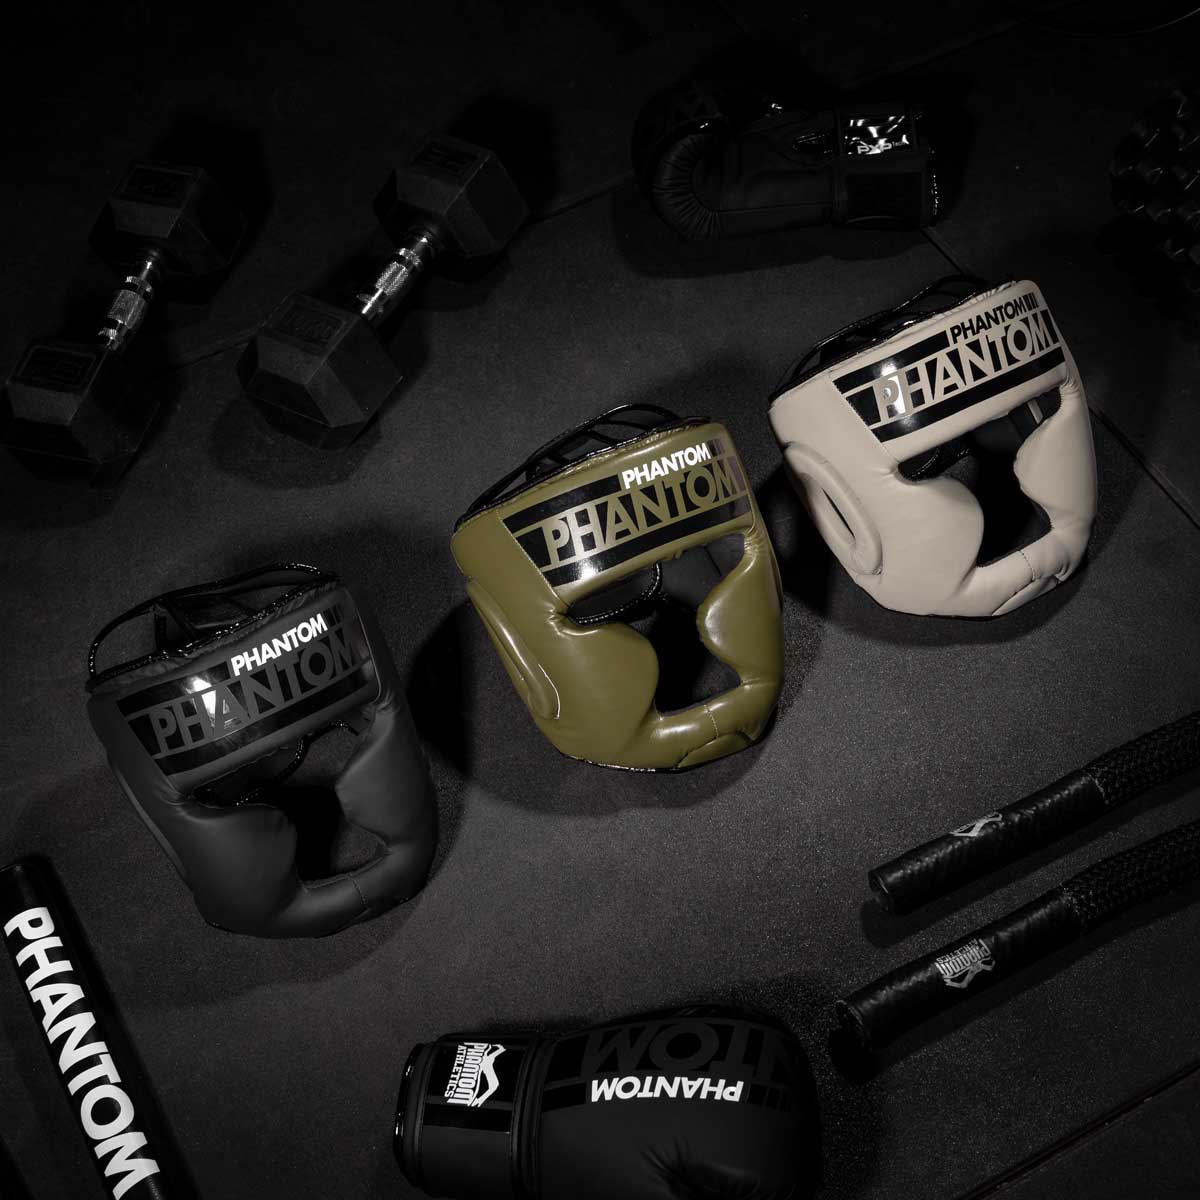 Den Phantom APEX Full Face Kopfschutz für Kampfsport gibt es in mehreren Farben.